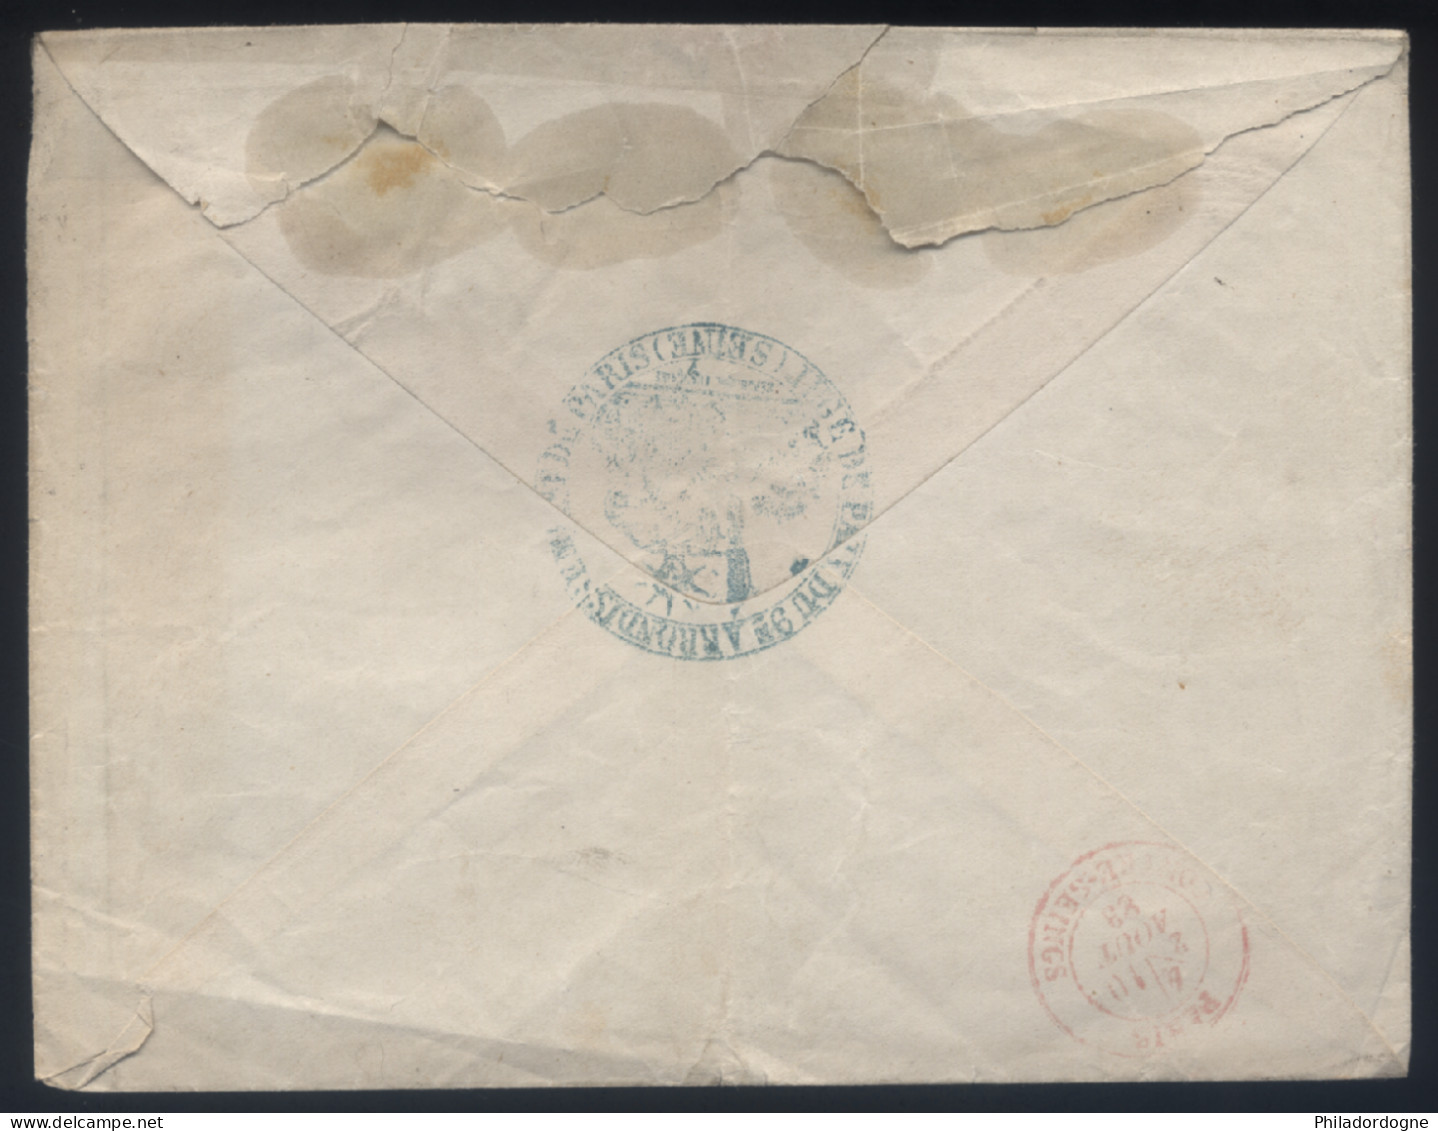 France - Taxe Yvert N° 18 Obl. Sur LsC Triangle Avec Dents Rue Milton Juge De Paix Contre Seings Rouge - 10/08/1888 - 1859-1959 Covers & Documents